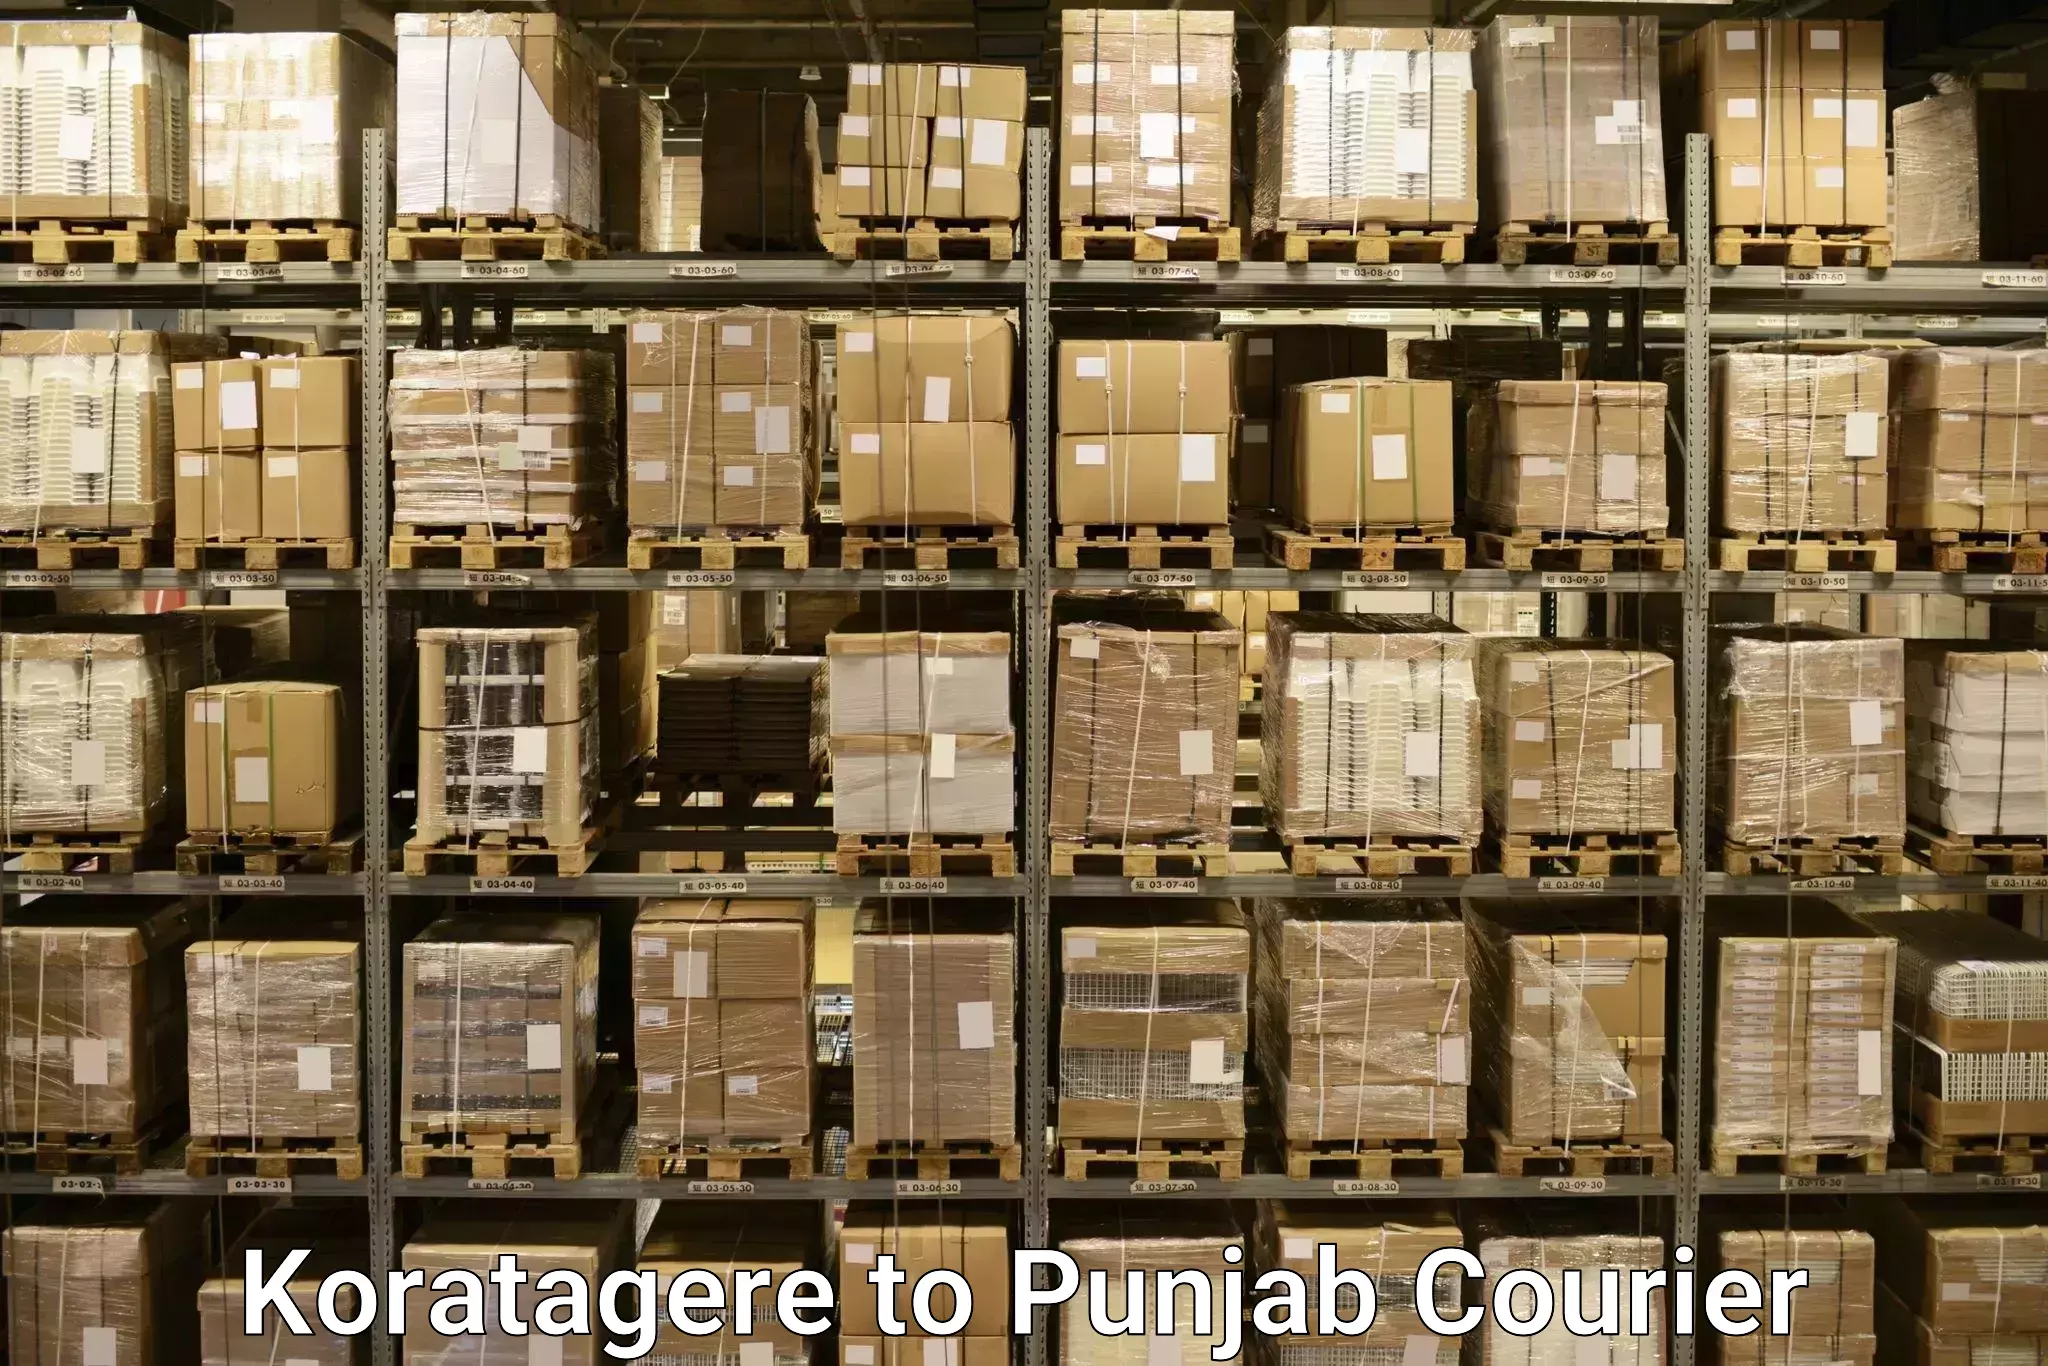 Luggage transport solutions Koratagere to Central University of Punjab Bathinda